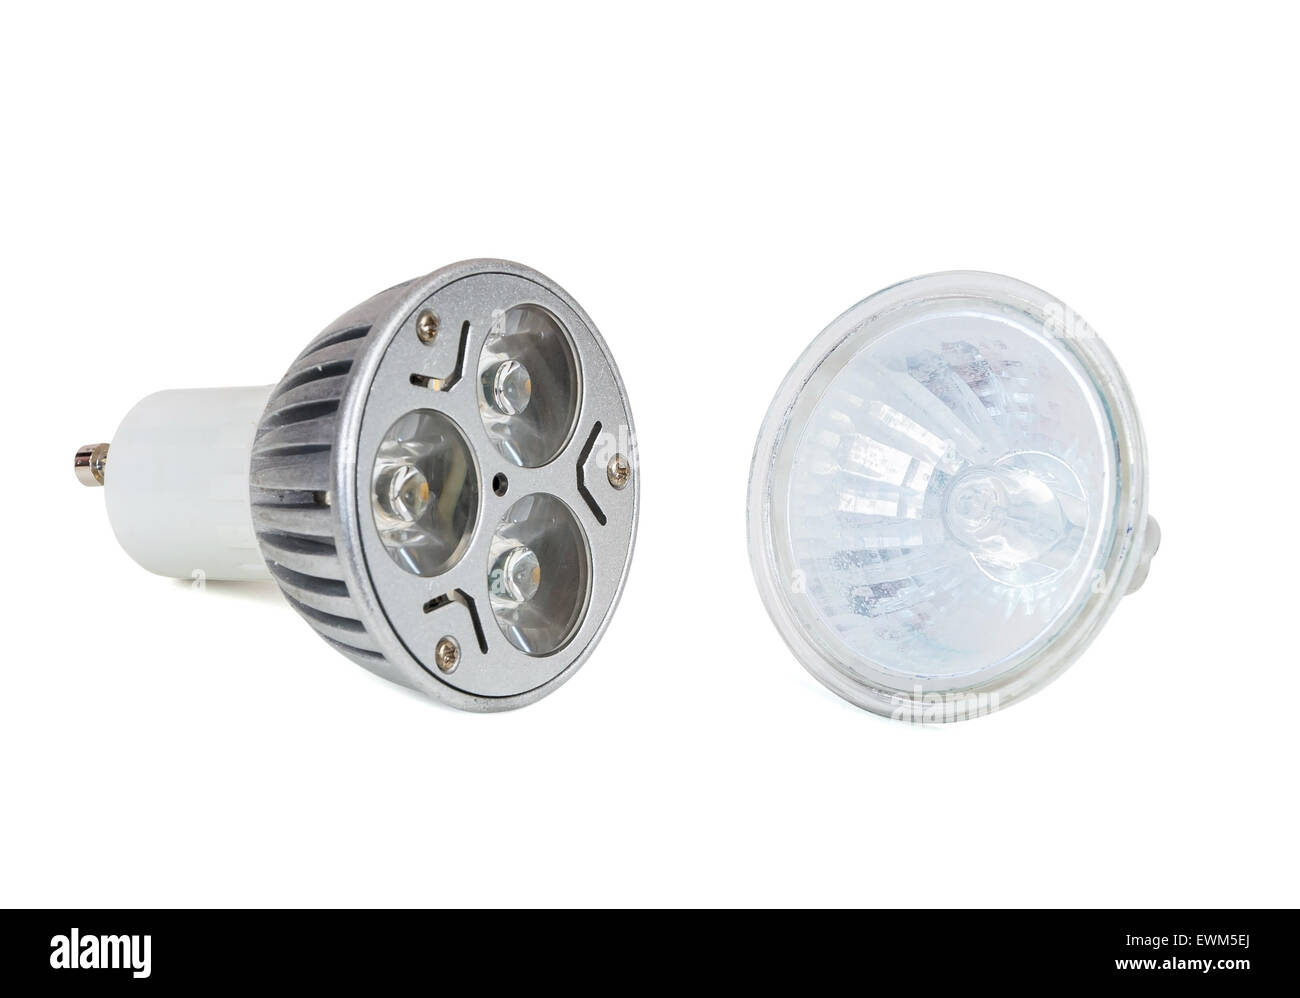 LED Glühbirne und Halogenlampe isoliert auf weißem Hintergrund mit Beschneidungspfad Stockfoto